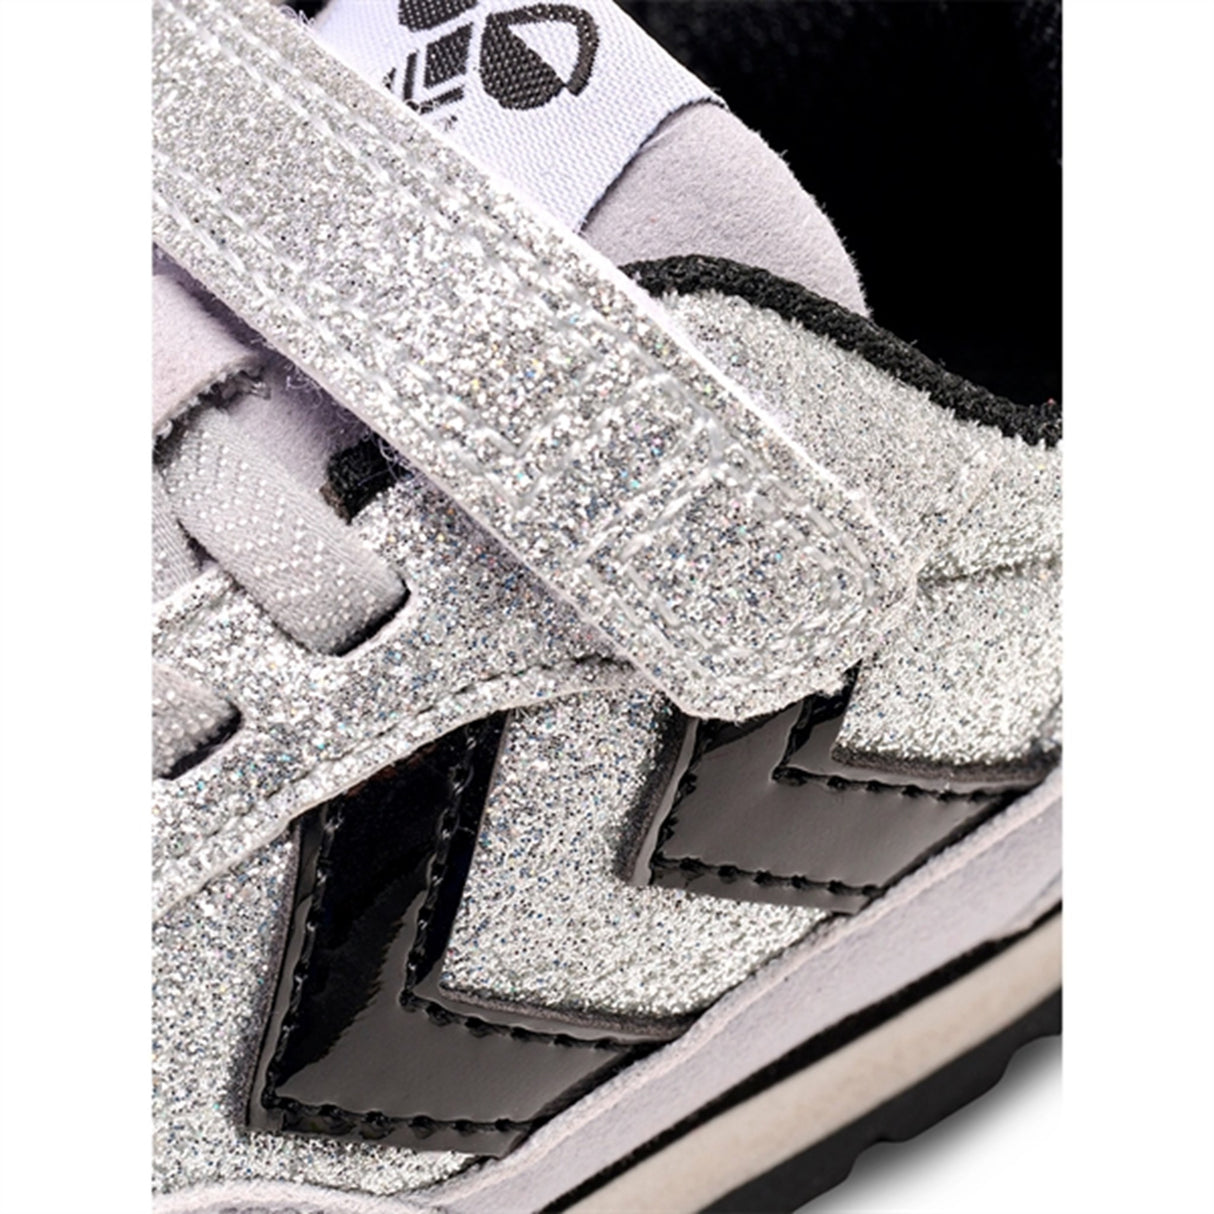 Hummel Reflex Glitter Infant Sneakers Silver 5